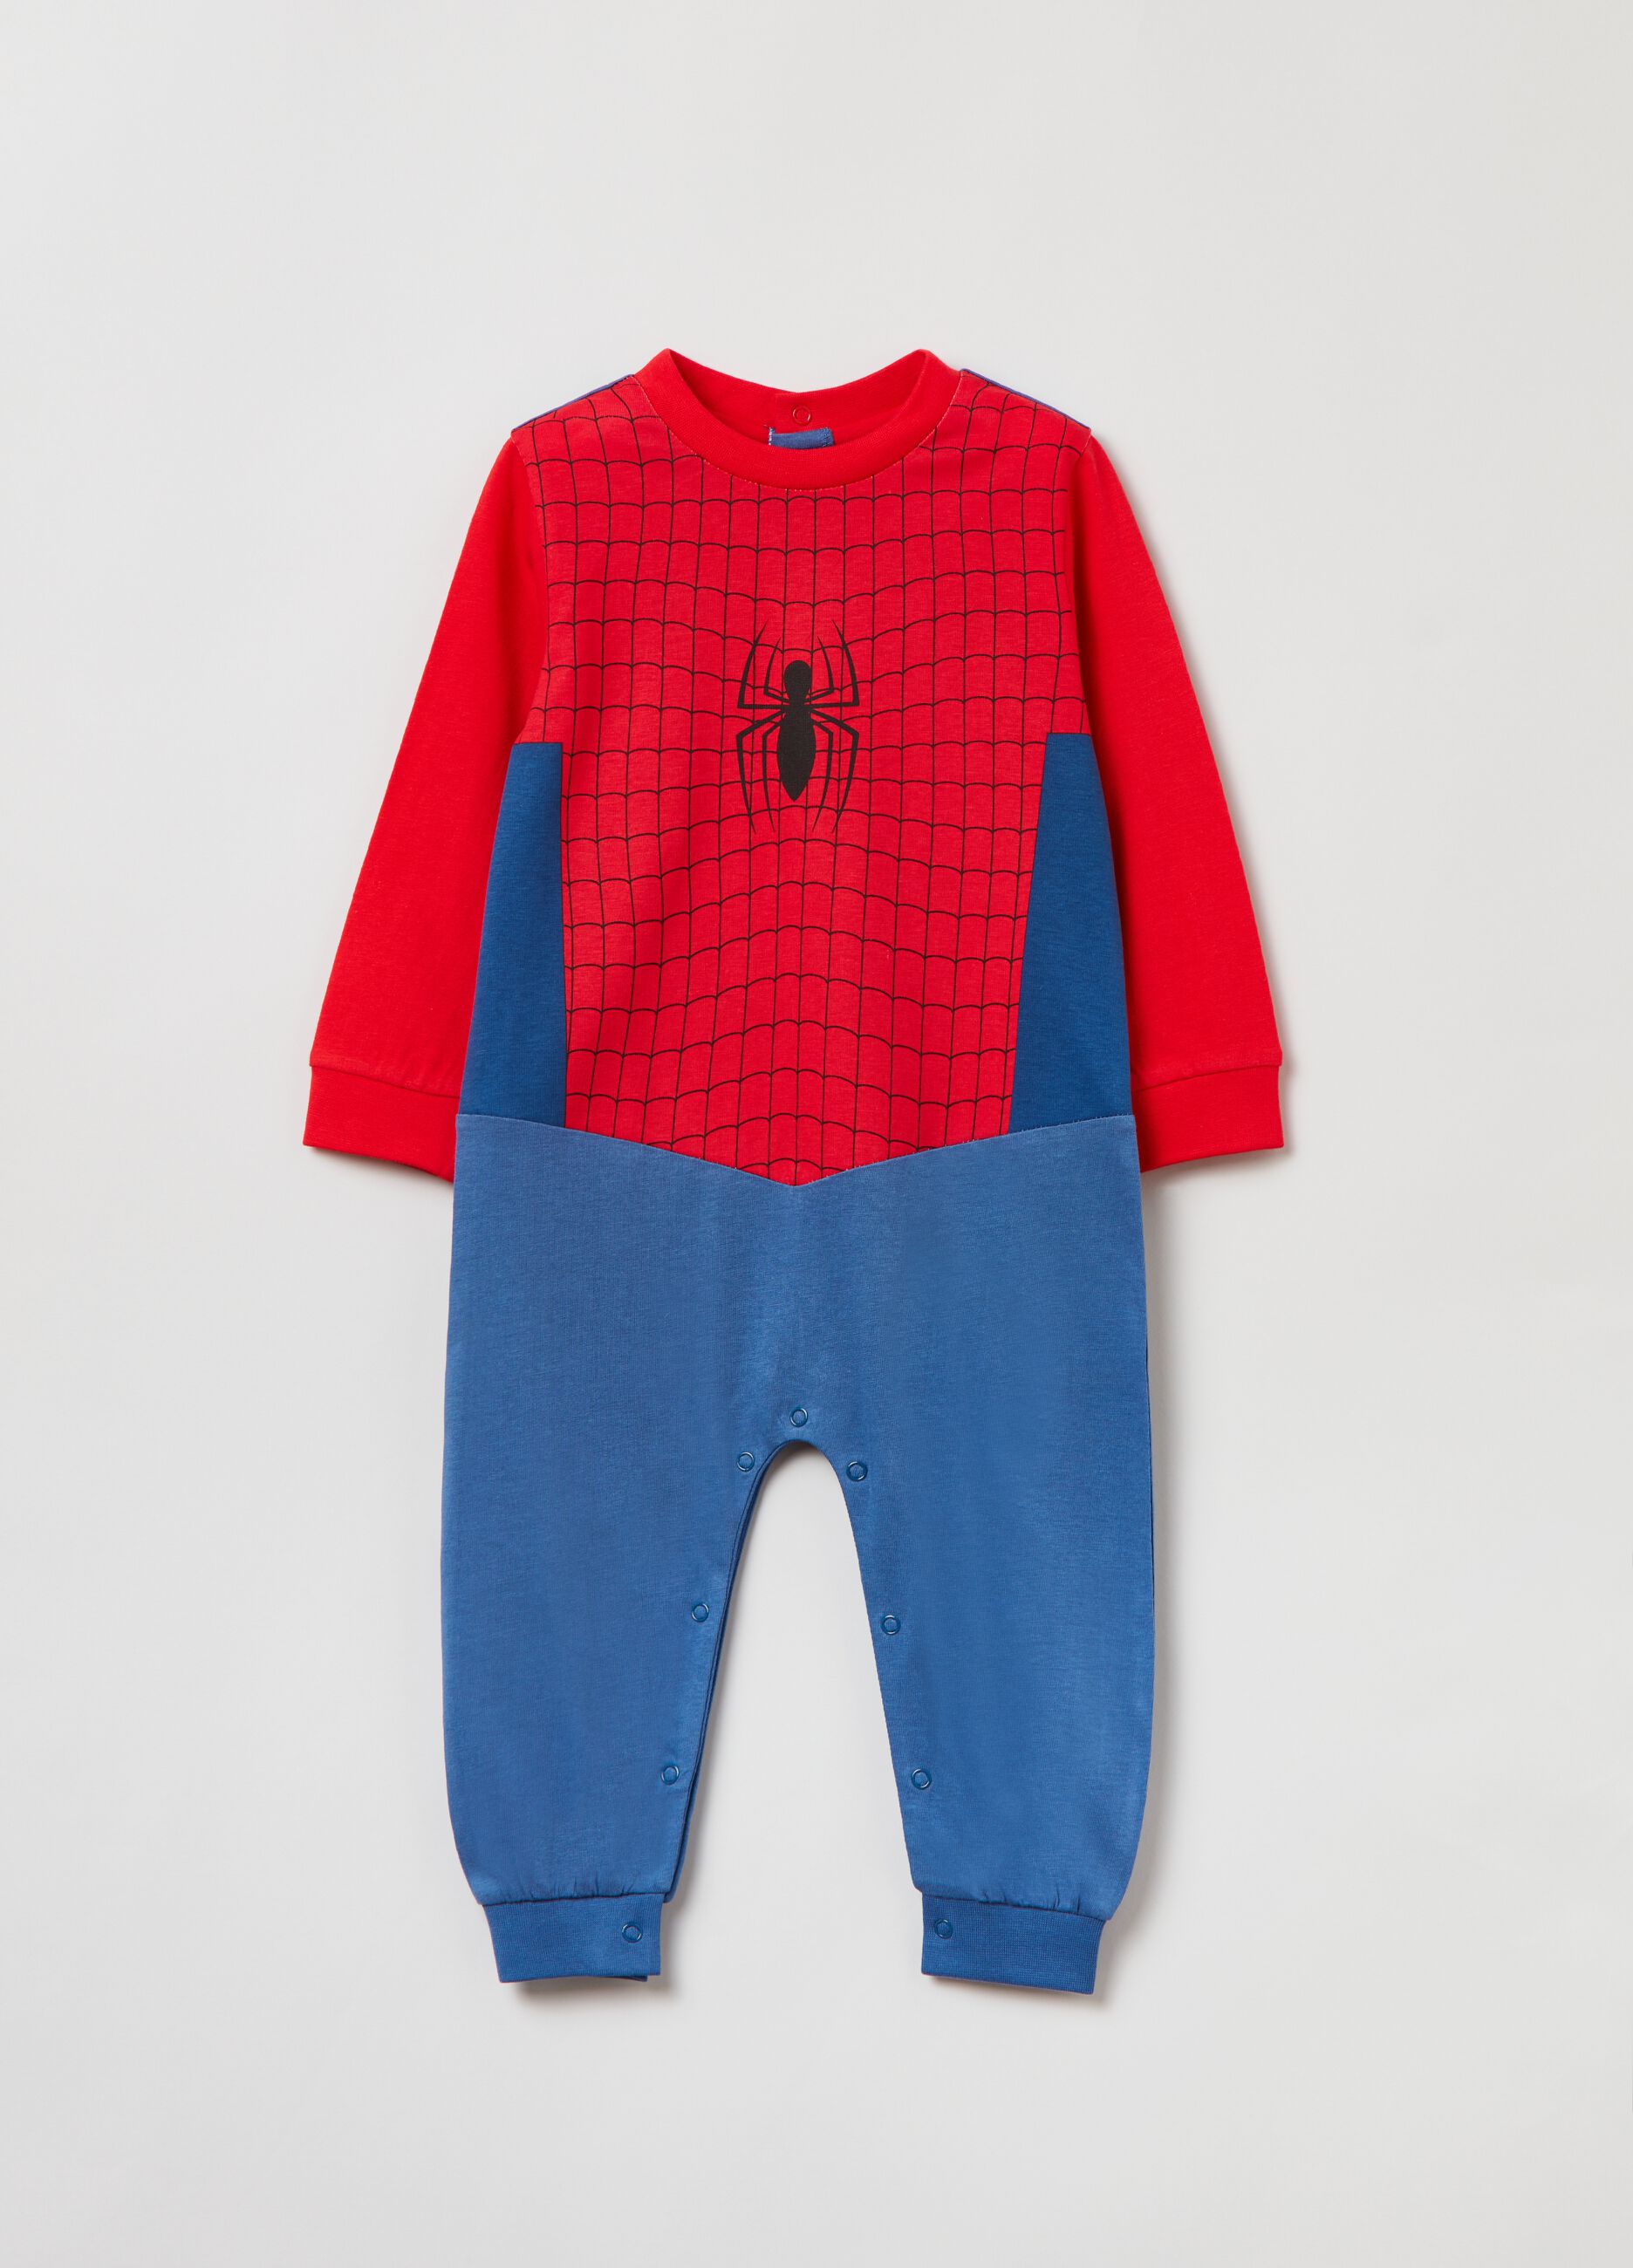 Cotton onesie with Marvel Spider-Man print